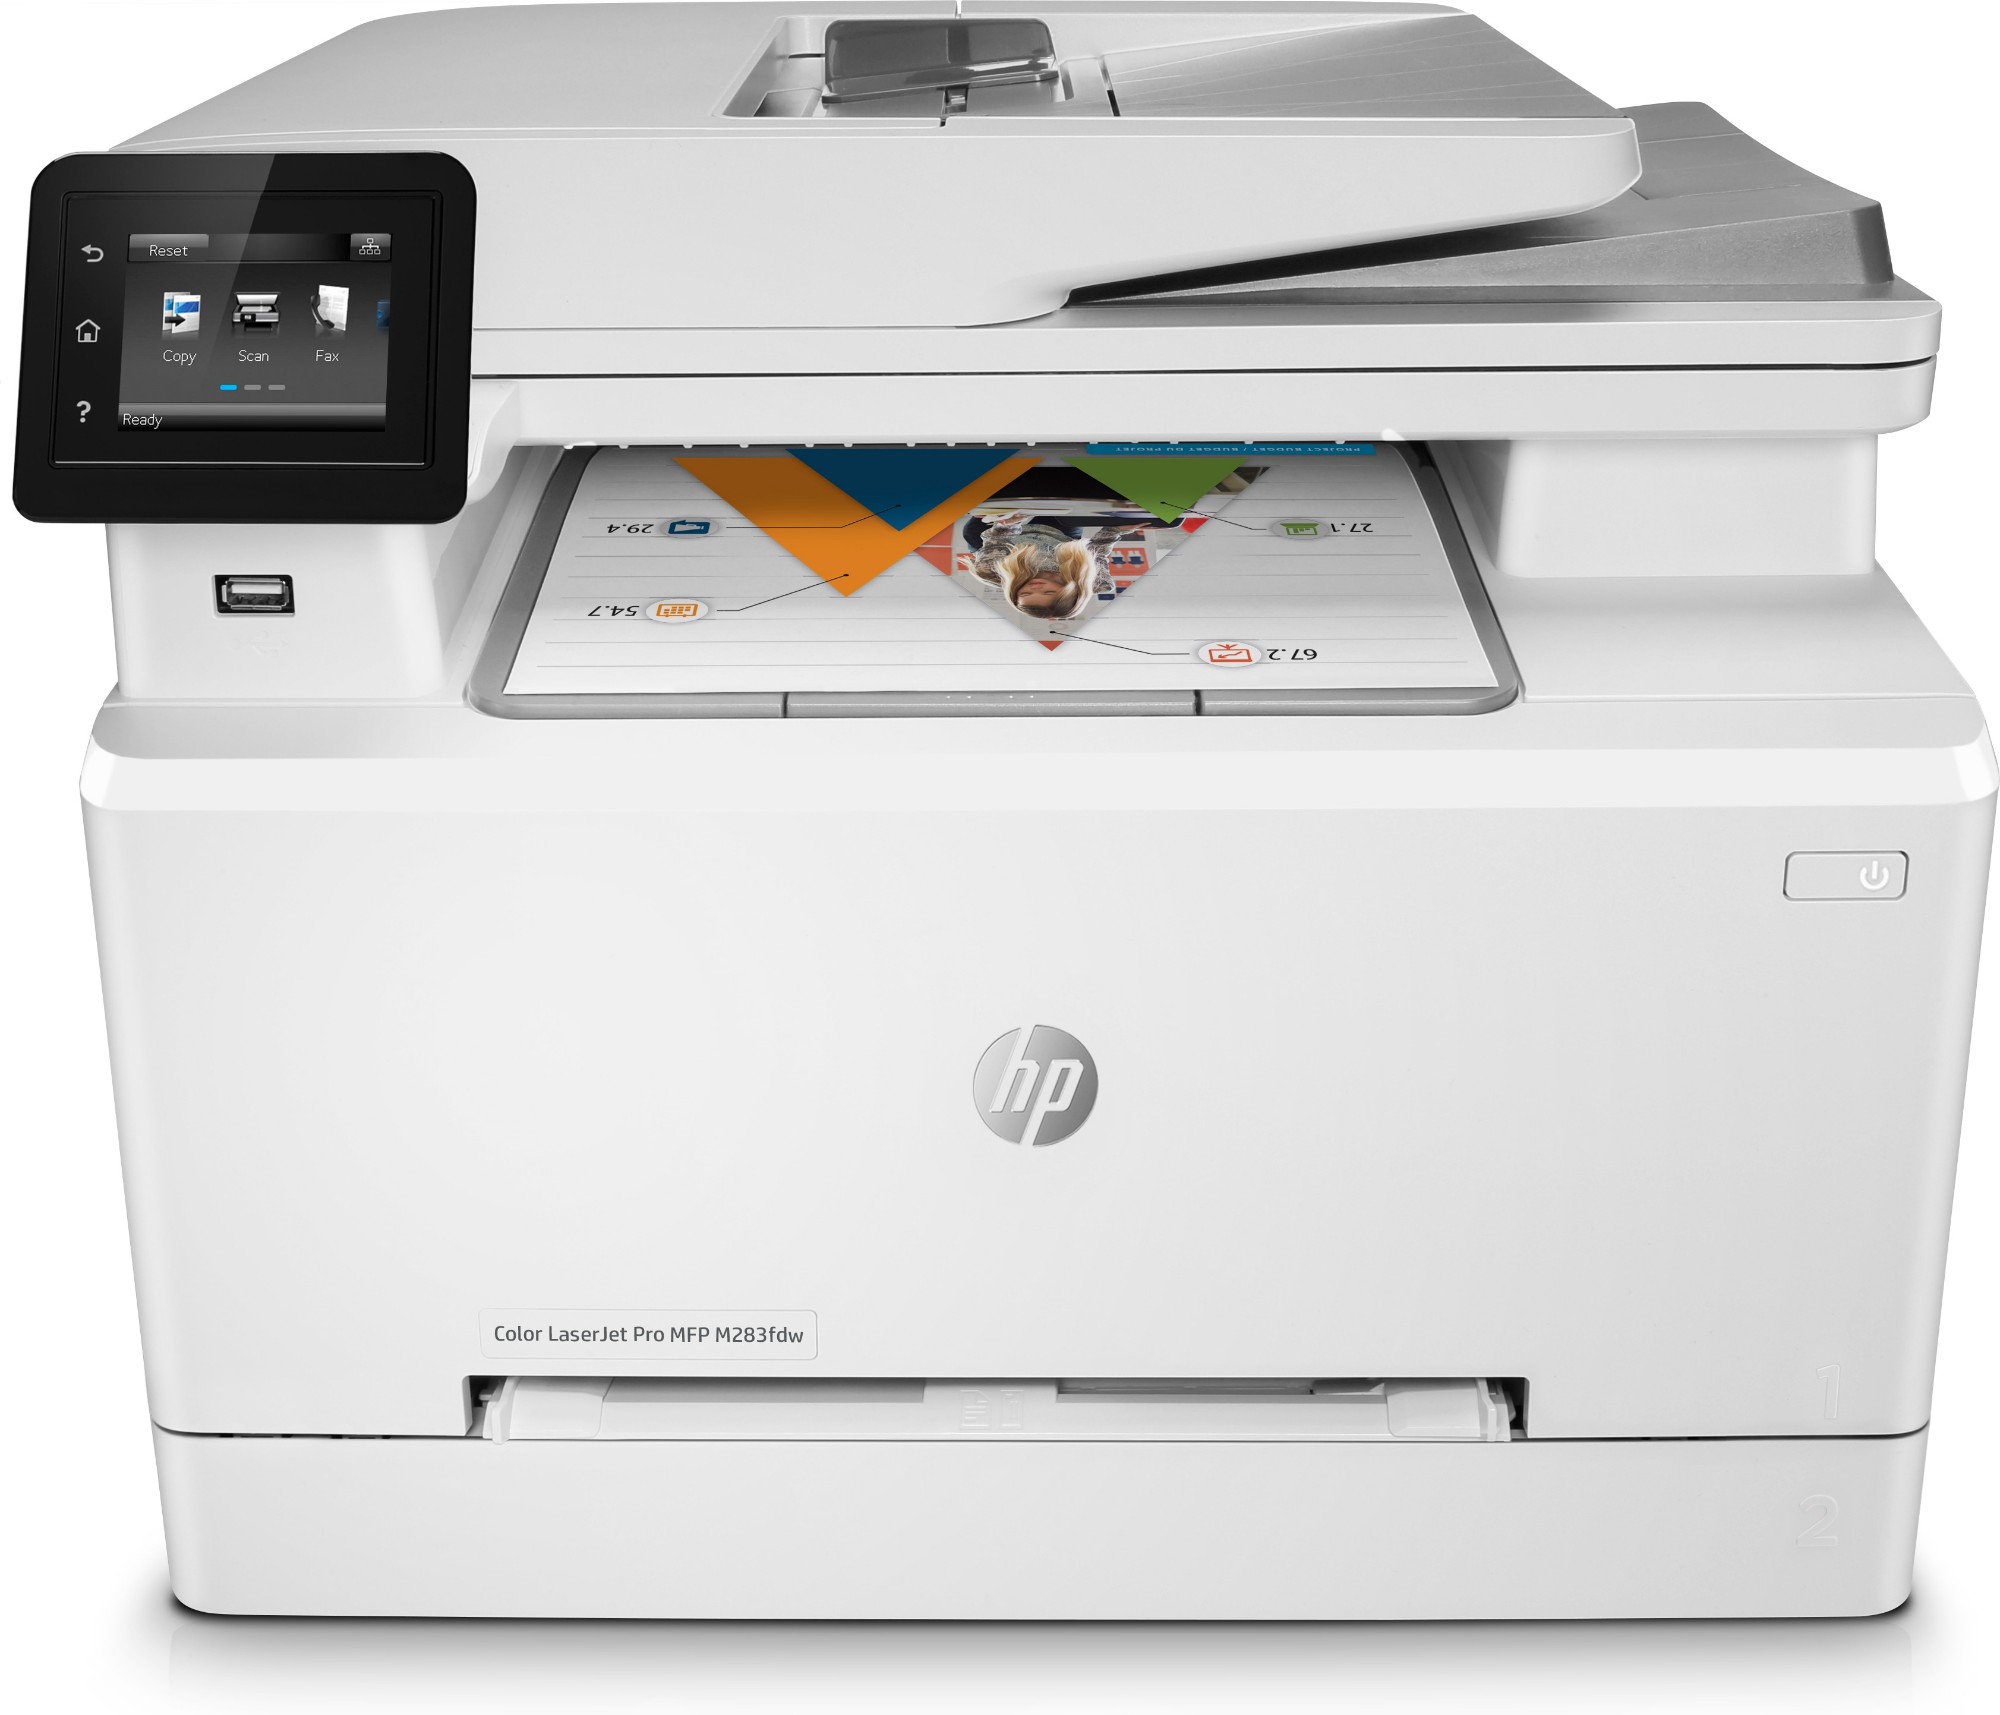 HP Color LaserJet Pro MFP M283fdw, Skriv ut, kopiera, skanna, fax, Utskrift från USB-port på framsidan; Skanna till e-post; Dubbelsidig utskrift; Automatisk dokumentmatare för 50 ark (ej ihoprullat)